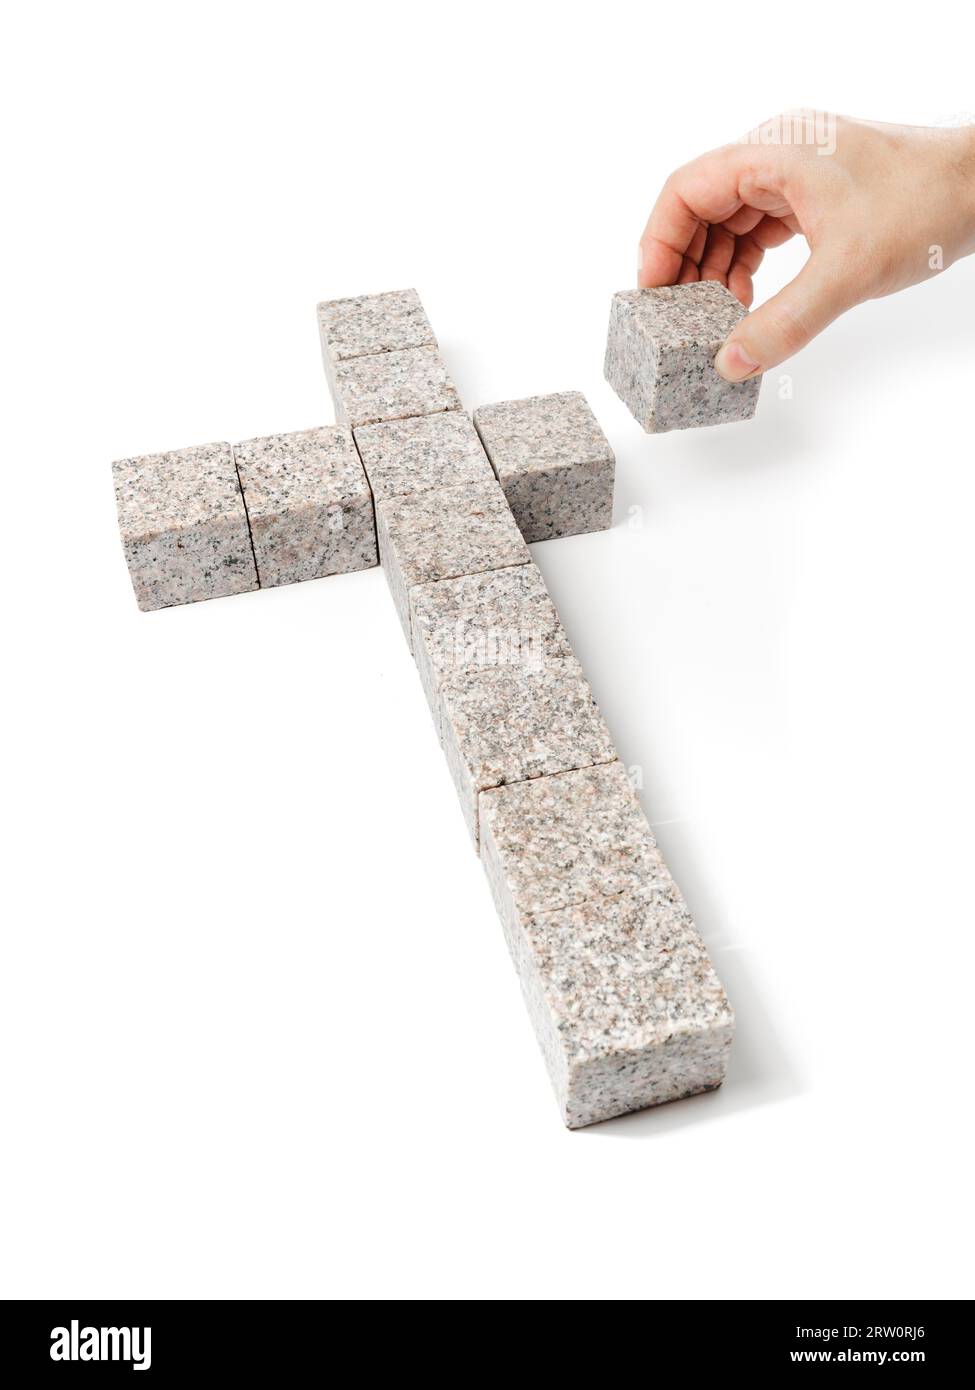 Homme construisant une croix chrétienne faite de petits blocs de roche de granit Banque D'Images